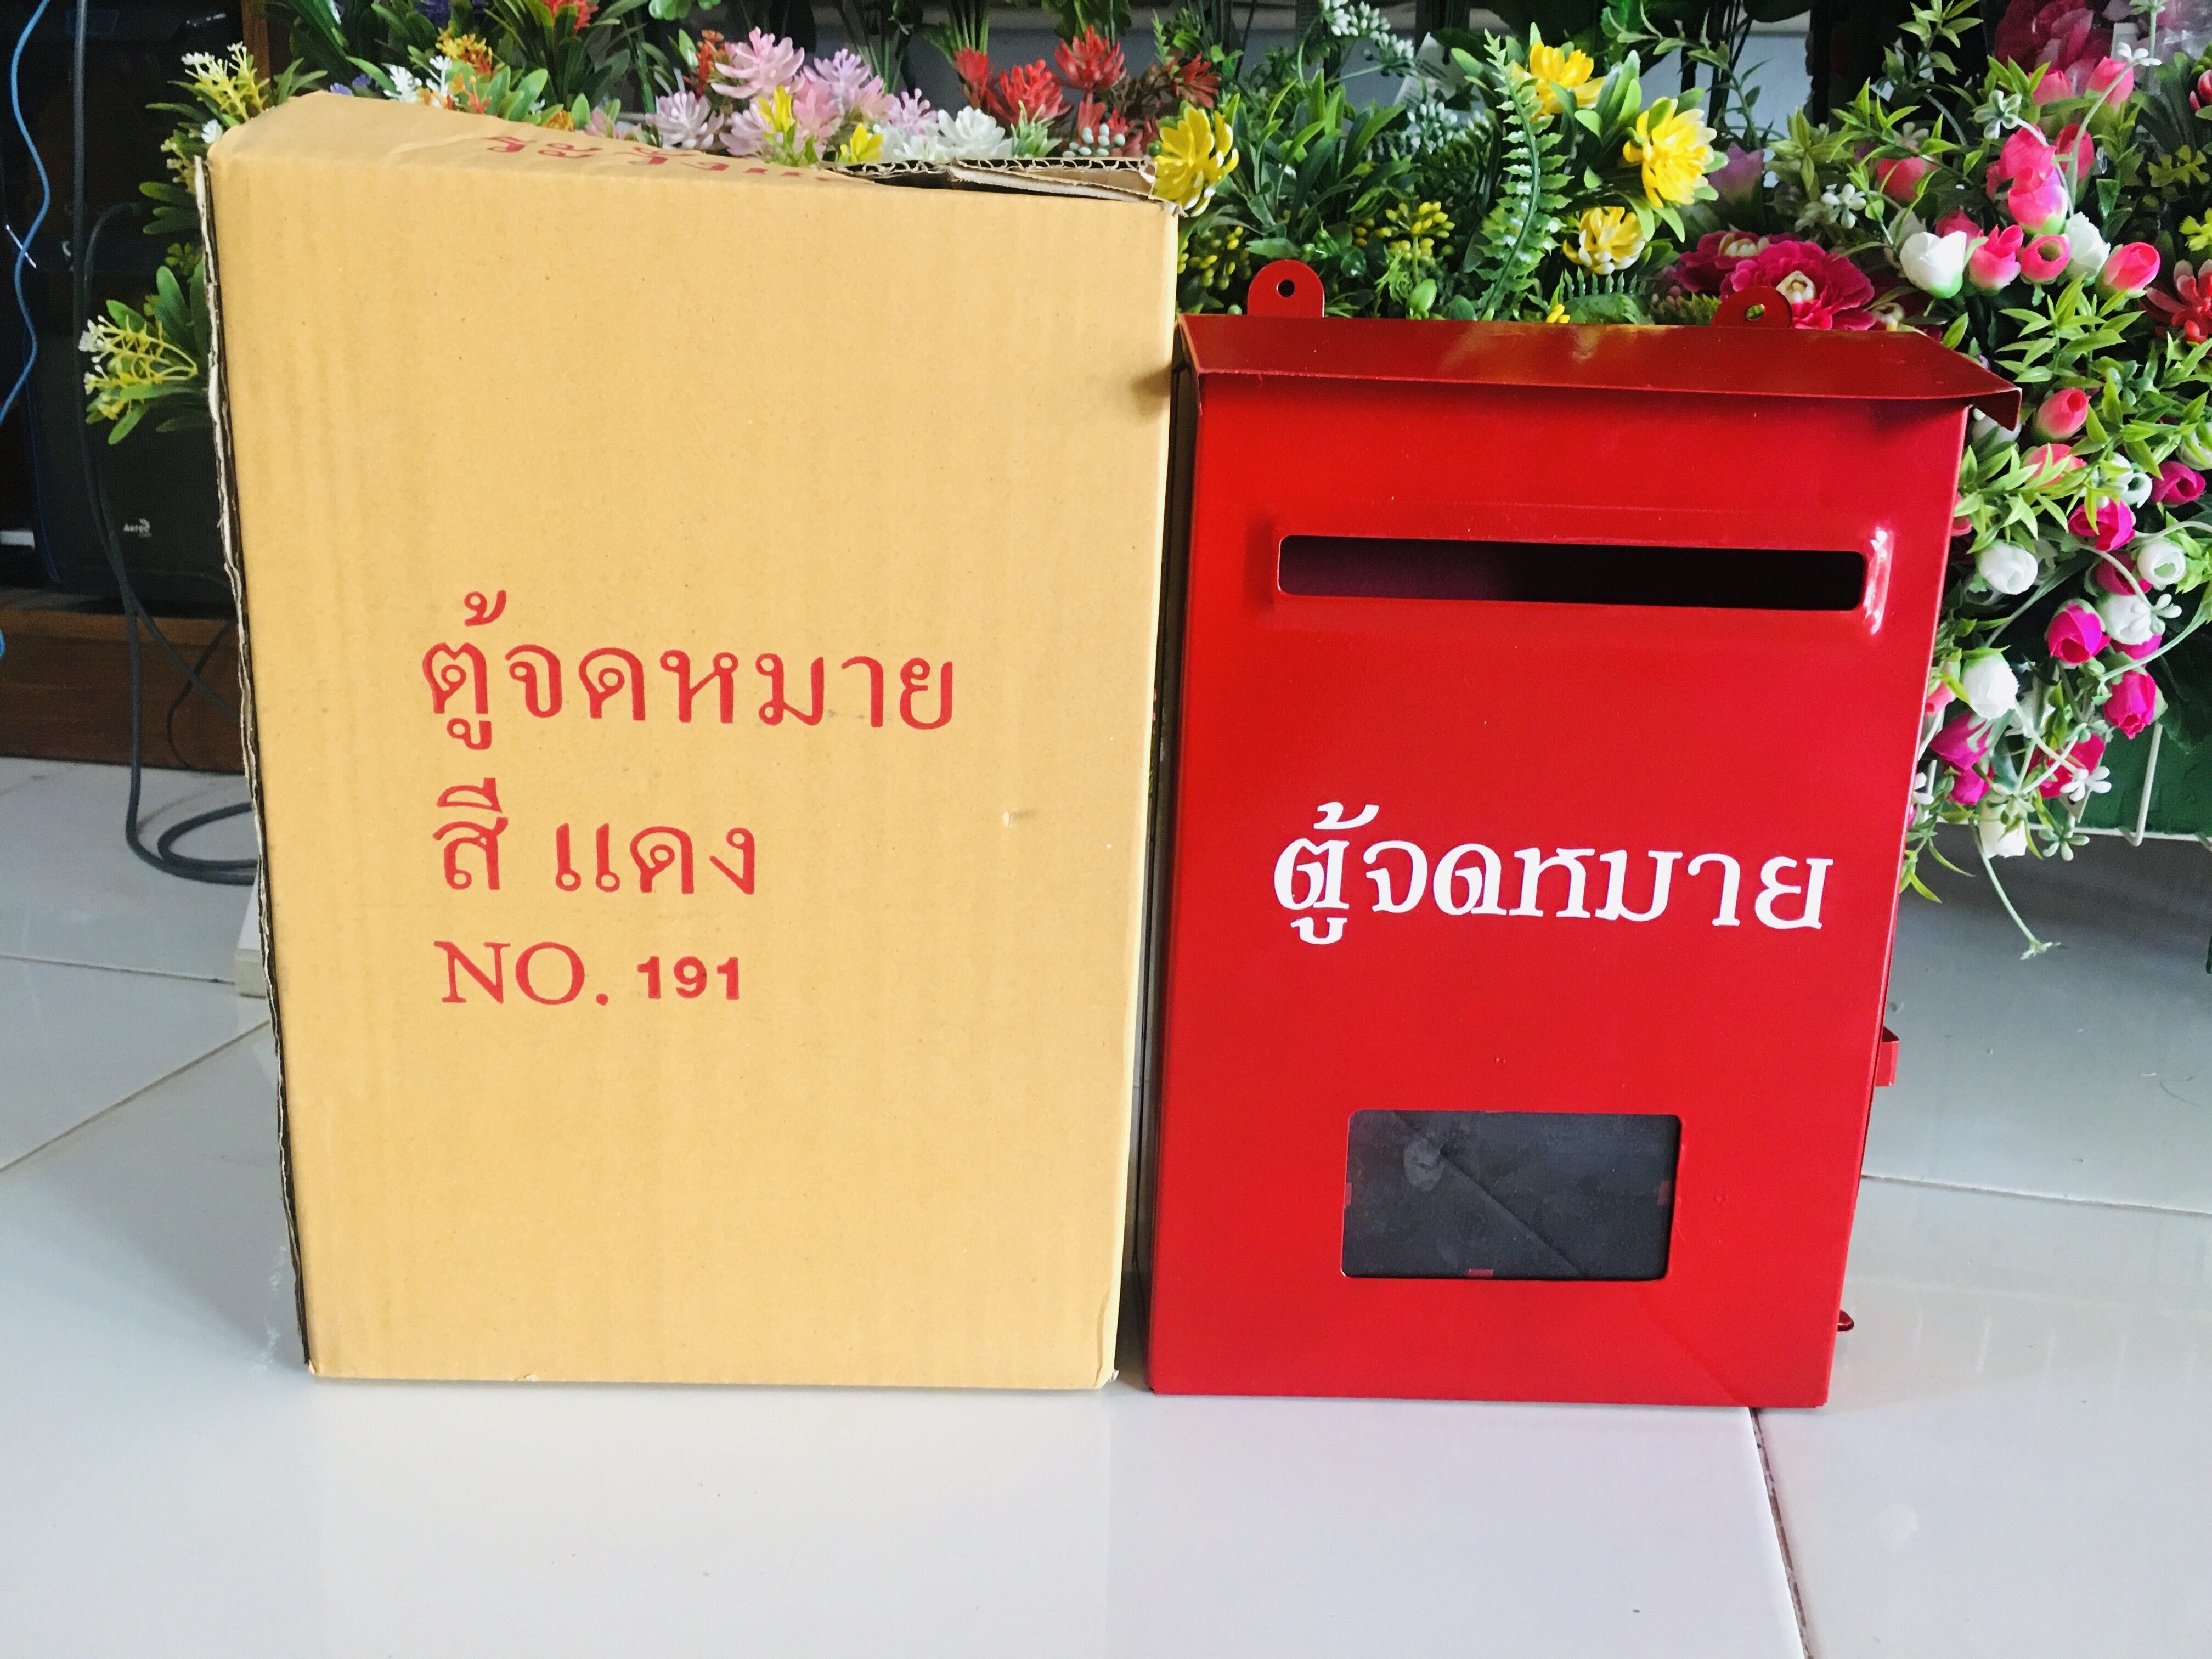 ตู้รับจดหมาย ทรงตั้ง  ตู้ไปรษณีย์แดง ขนาด( 20.4 x 7.7 x 31.5 )กล่องจดหมาย ตู้จดหมาย ราคาถูก